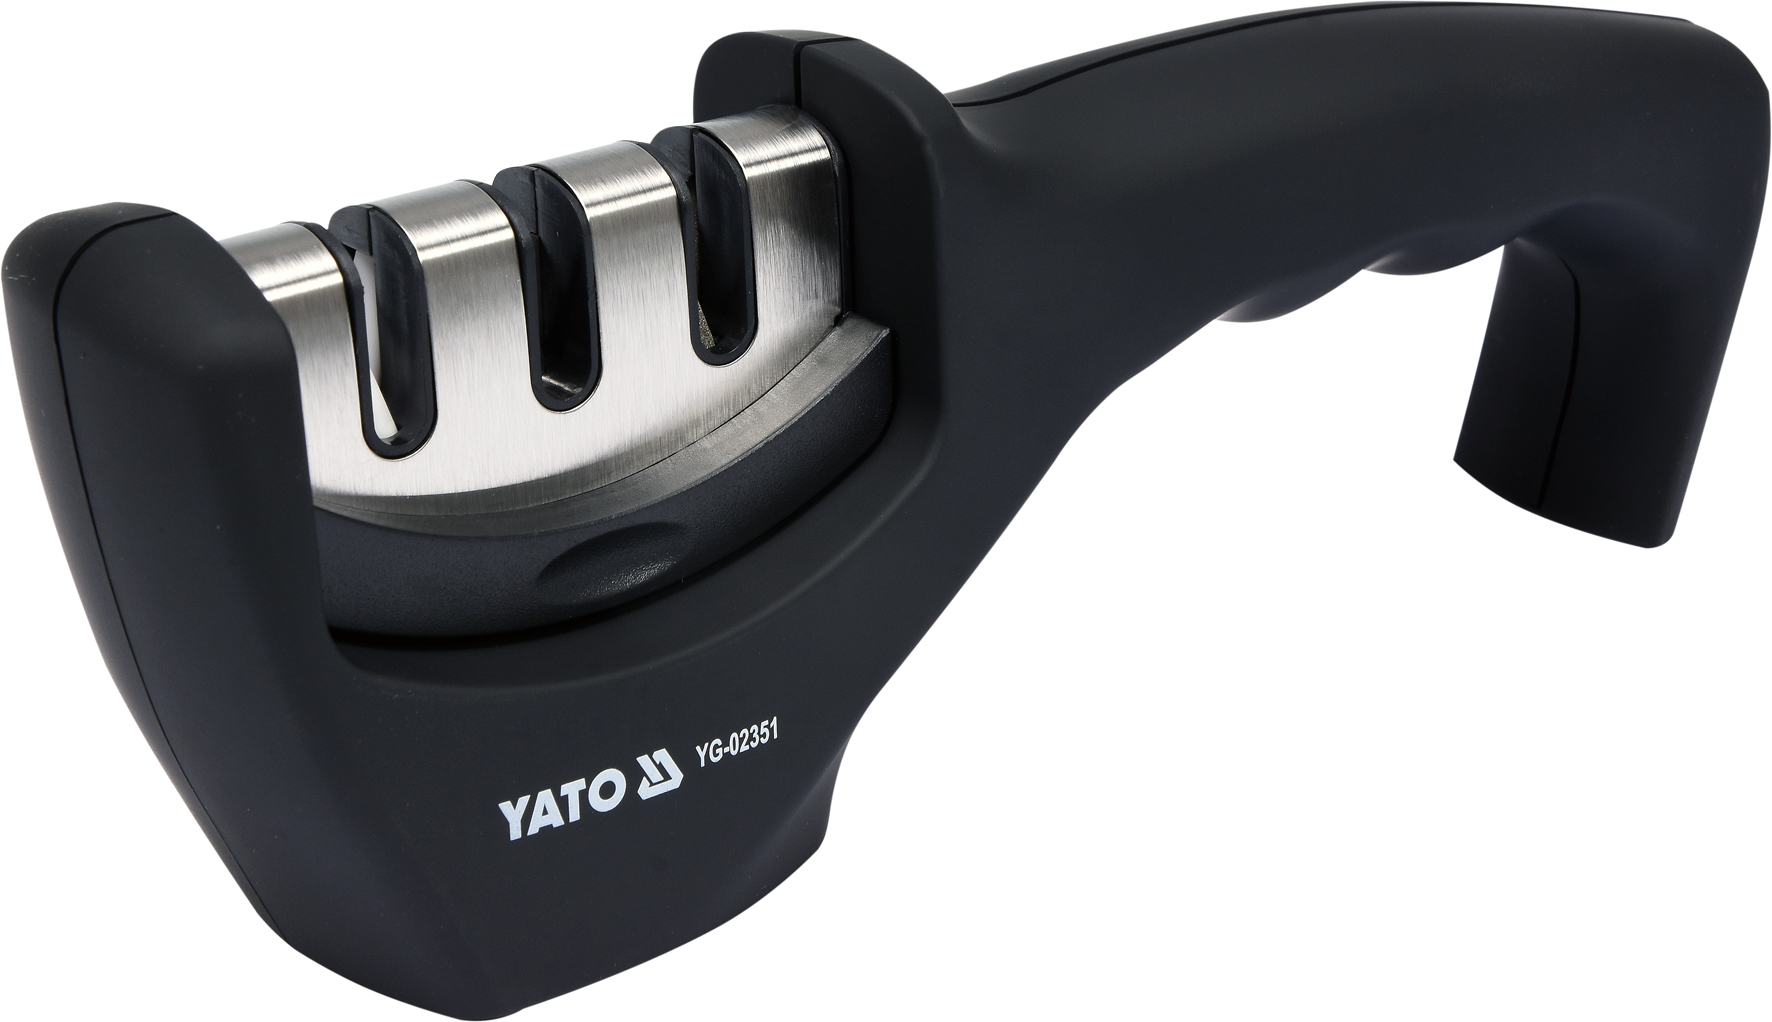  для ножей Yato YG-02351,  по выгодной цене с доставкой по .